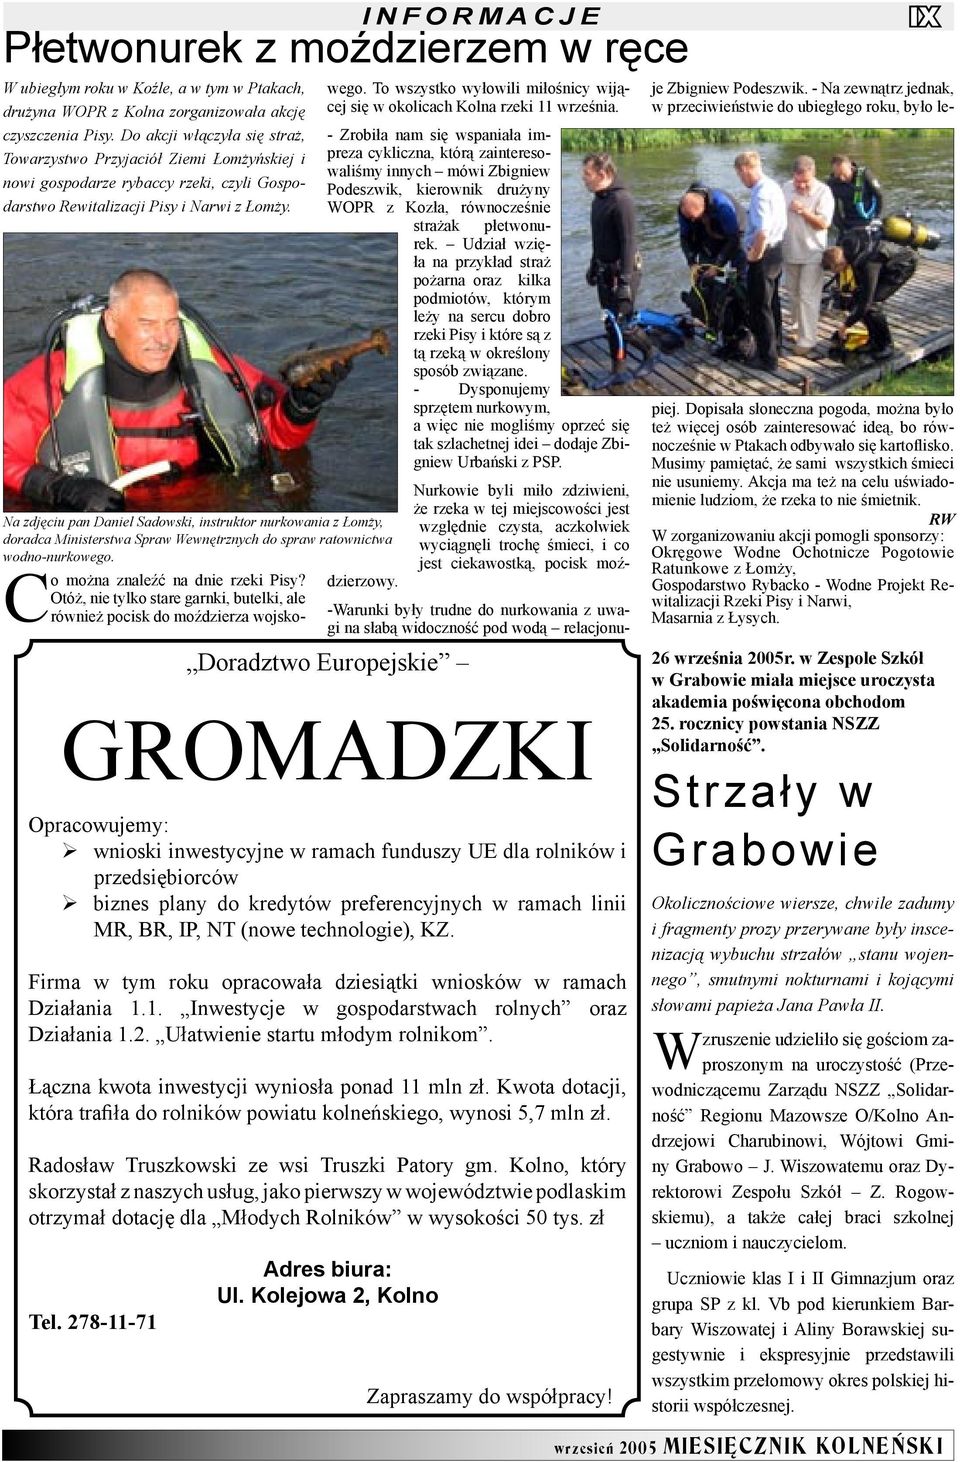 Na zdjęciu pan Daniel Sadowski, instruktor nurkowania z Łomży, doradca Ministerstwa Spraw Wewnętrznych do spraw ratownictwa wodno-nurkowego.